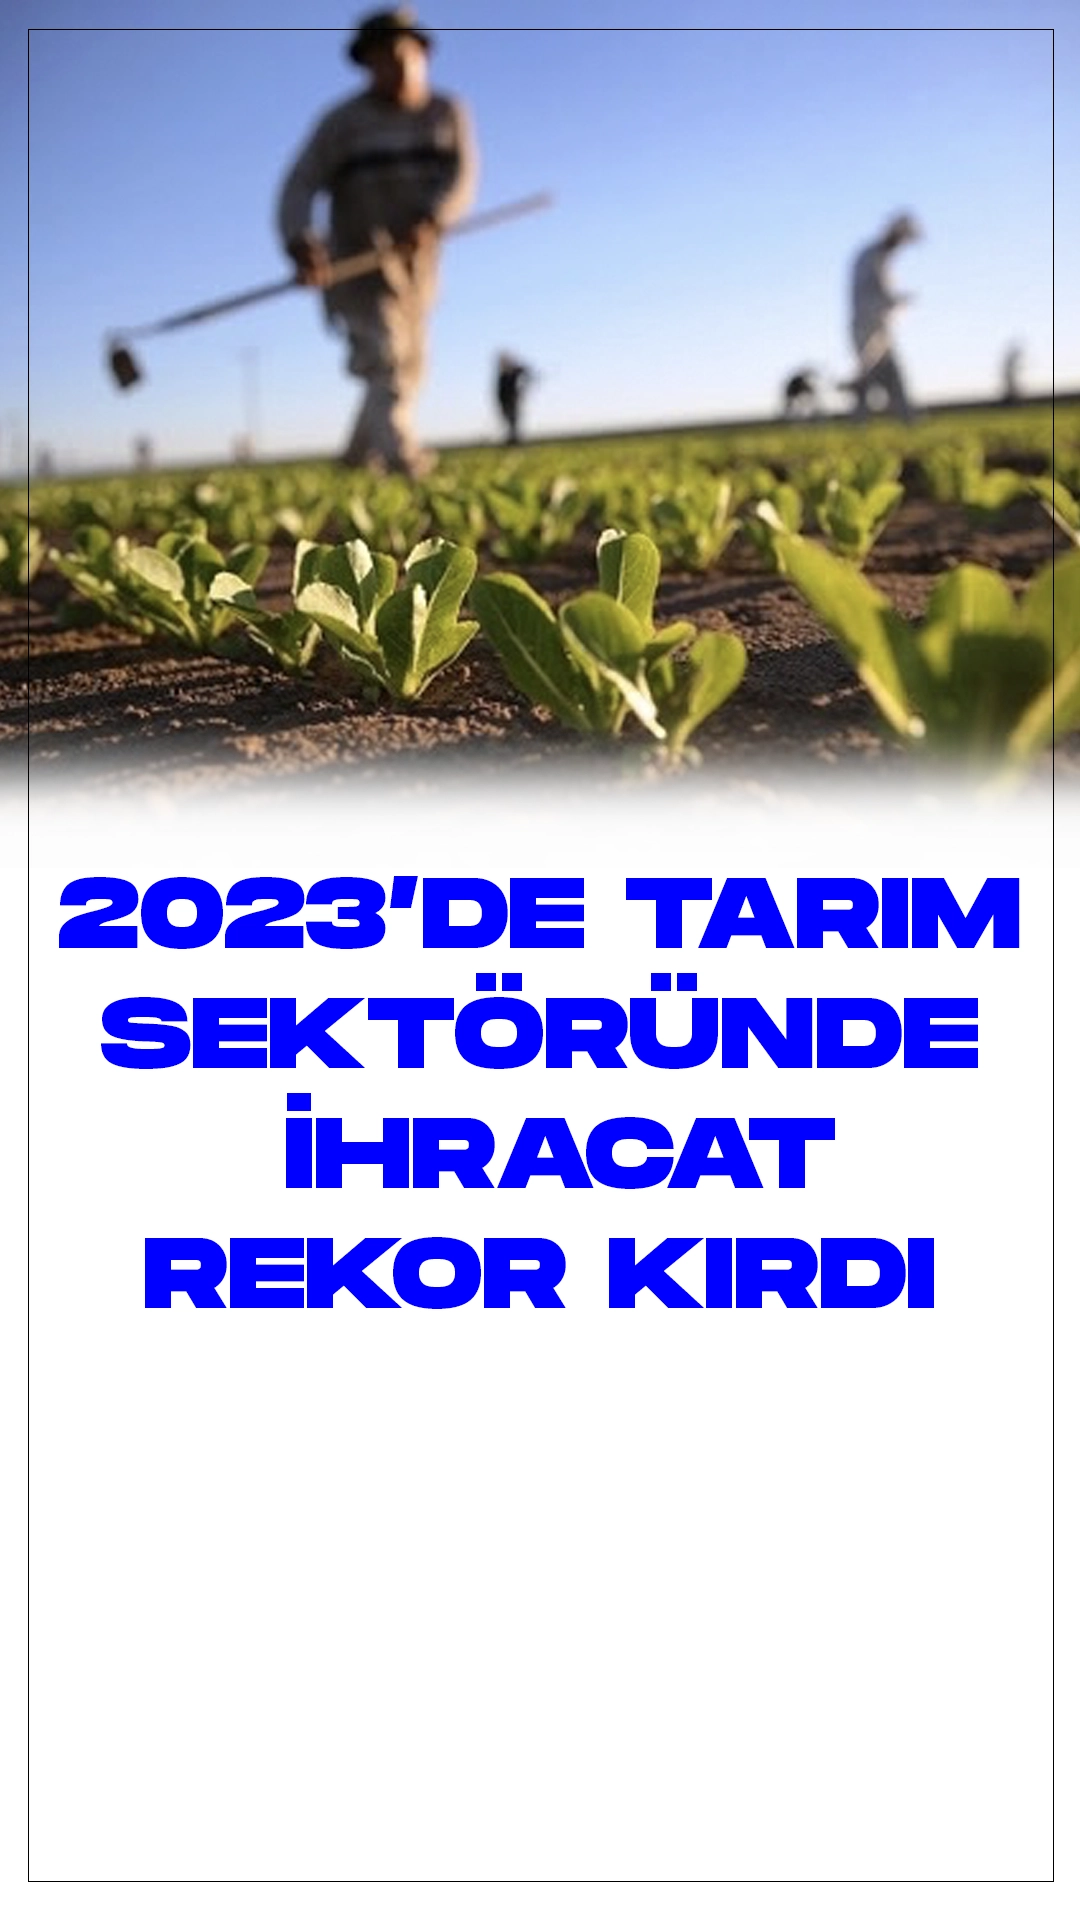 Tarım Sektörü 2023'te Tarihi İhracat Rekorunu Kırdı: 35 Milyar Dolarlık Dış Satış.Geçtiğimiz yıl, Türkiye'nin tarım sektörü, tüm zamanların en yüksek ihracat rakamına ulaşarak 35 milyar doları aştı. Jeopolitik riskler, arz endişeleri, kuraklık ve küresel gıda erişimine dair sorunlar devam ederken, Türkiye'nin tarım ürünlerine olan talep artışı devam etti.